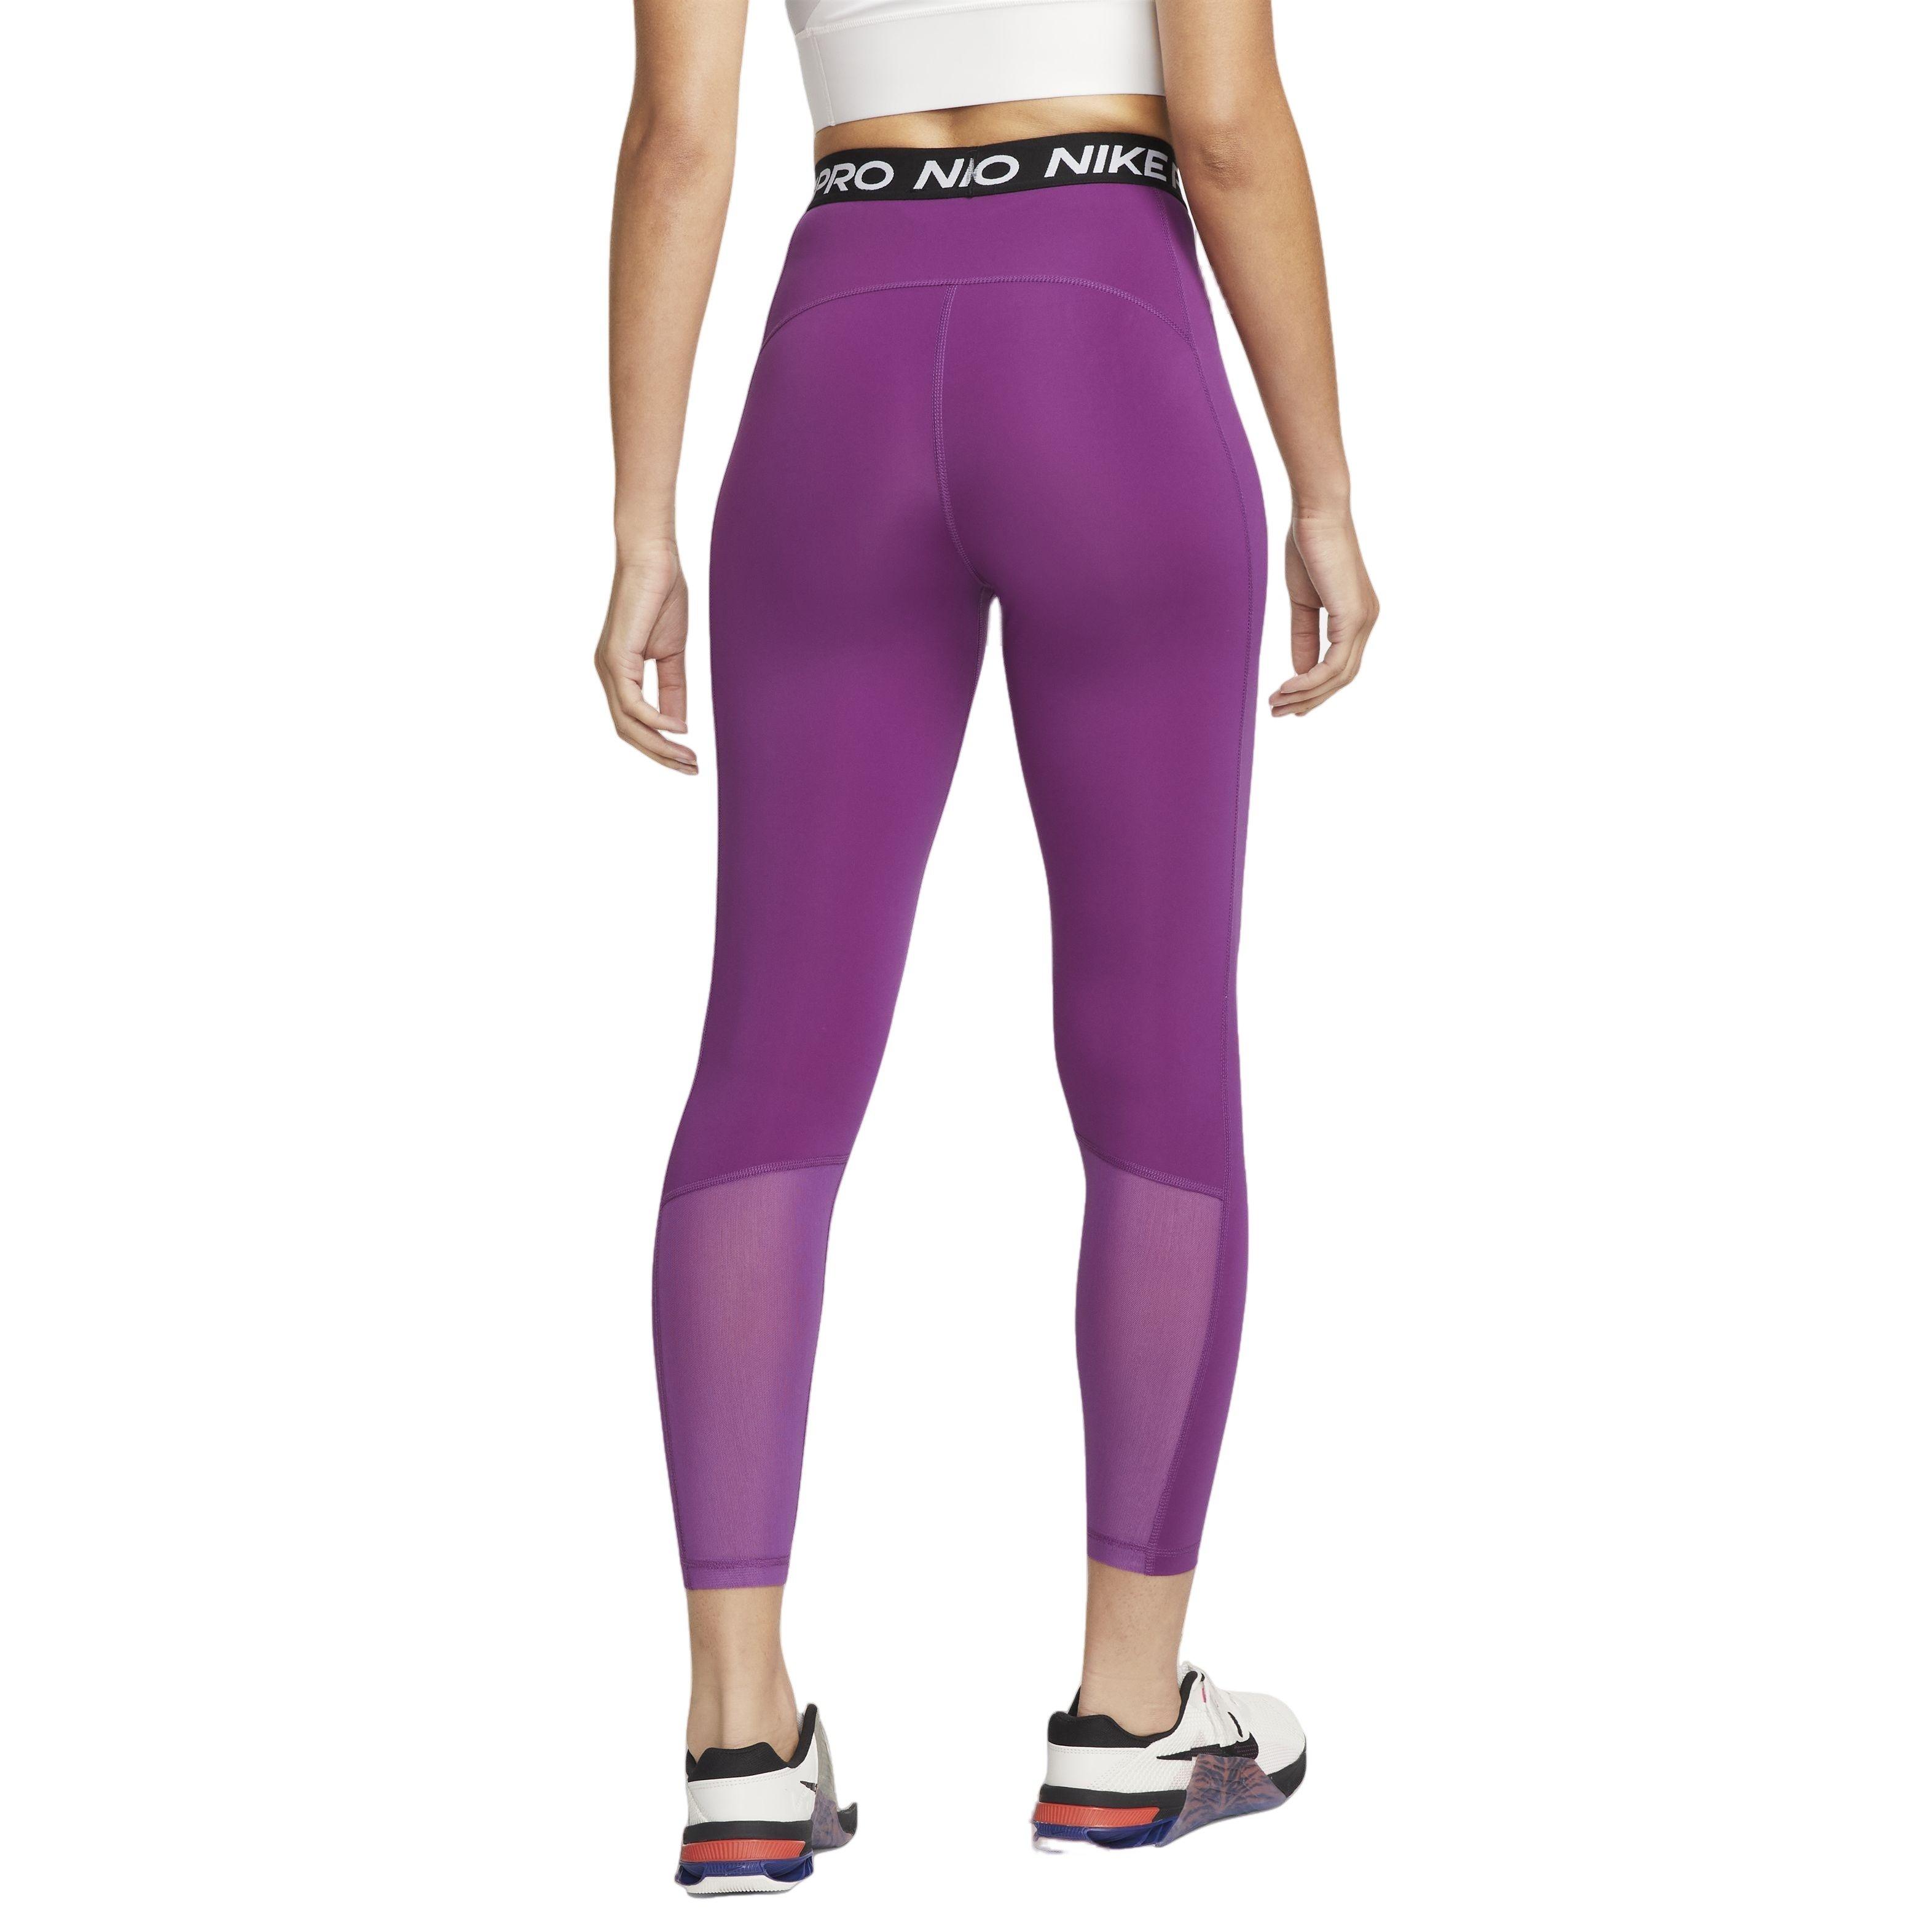 Nike Pro Training 365 leggings in purple